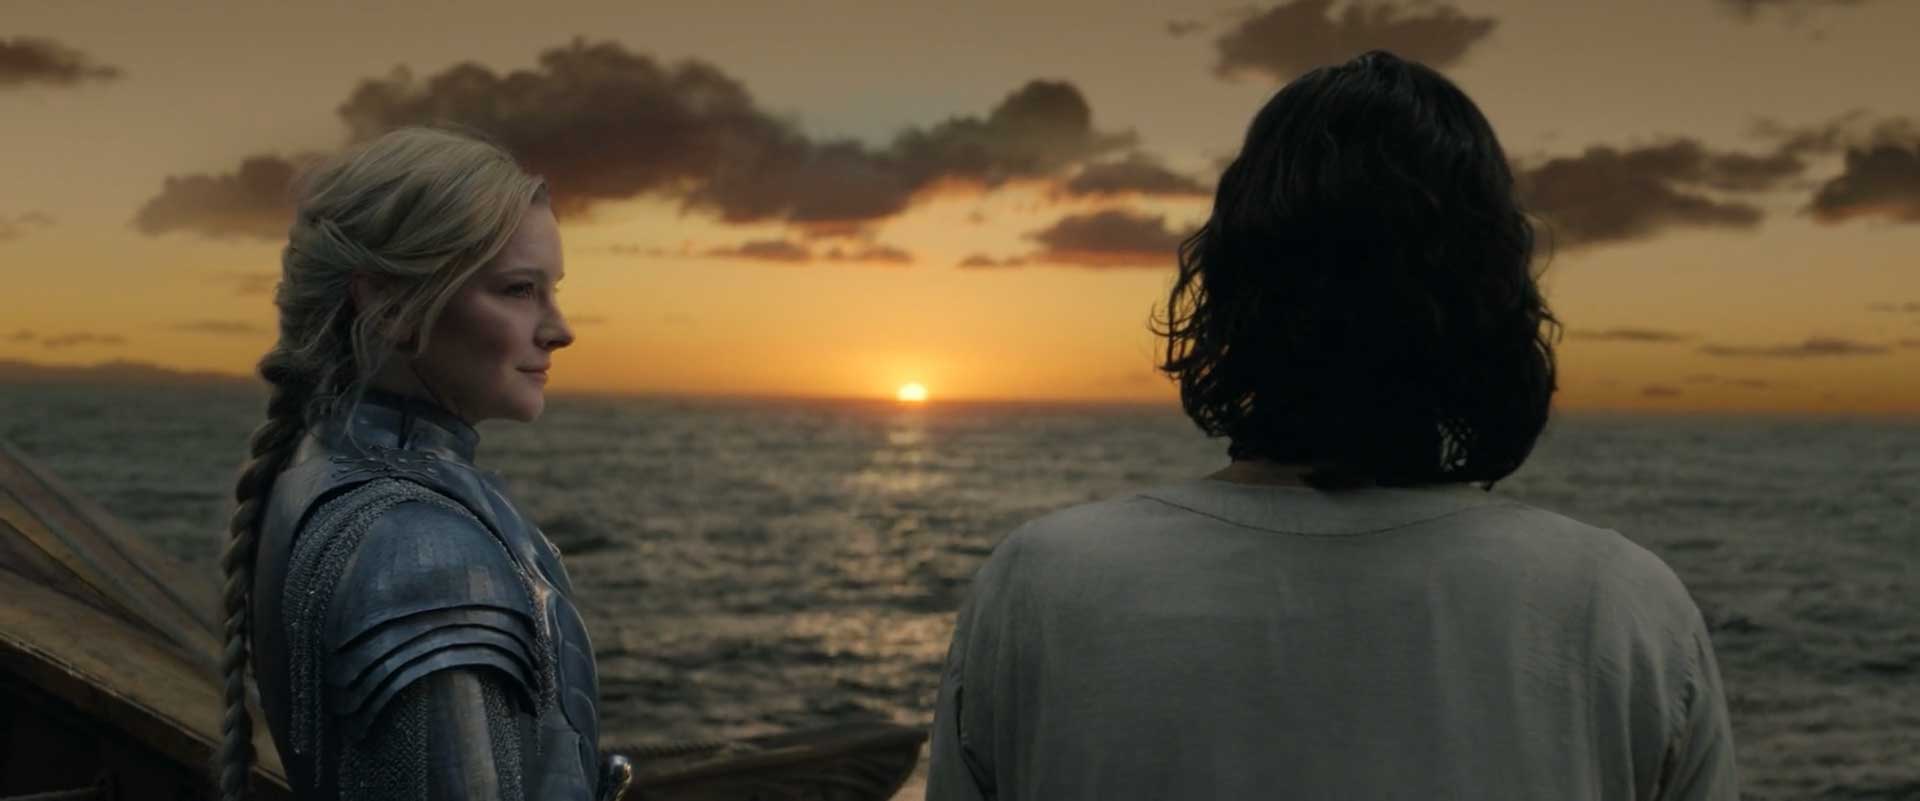 لبخند گالادریل به ایسیلدور روی کشتی در برابر خورشید طی بخش آغازین قسمت ۶ فصل ۱ سریال The Rings of Power (حلقه های قدرت)